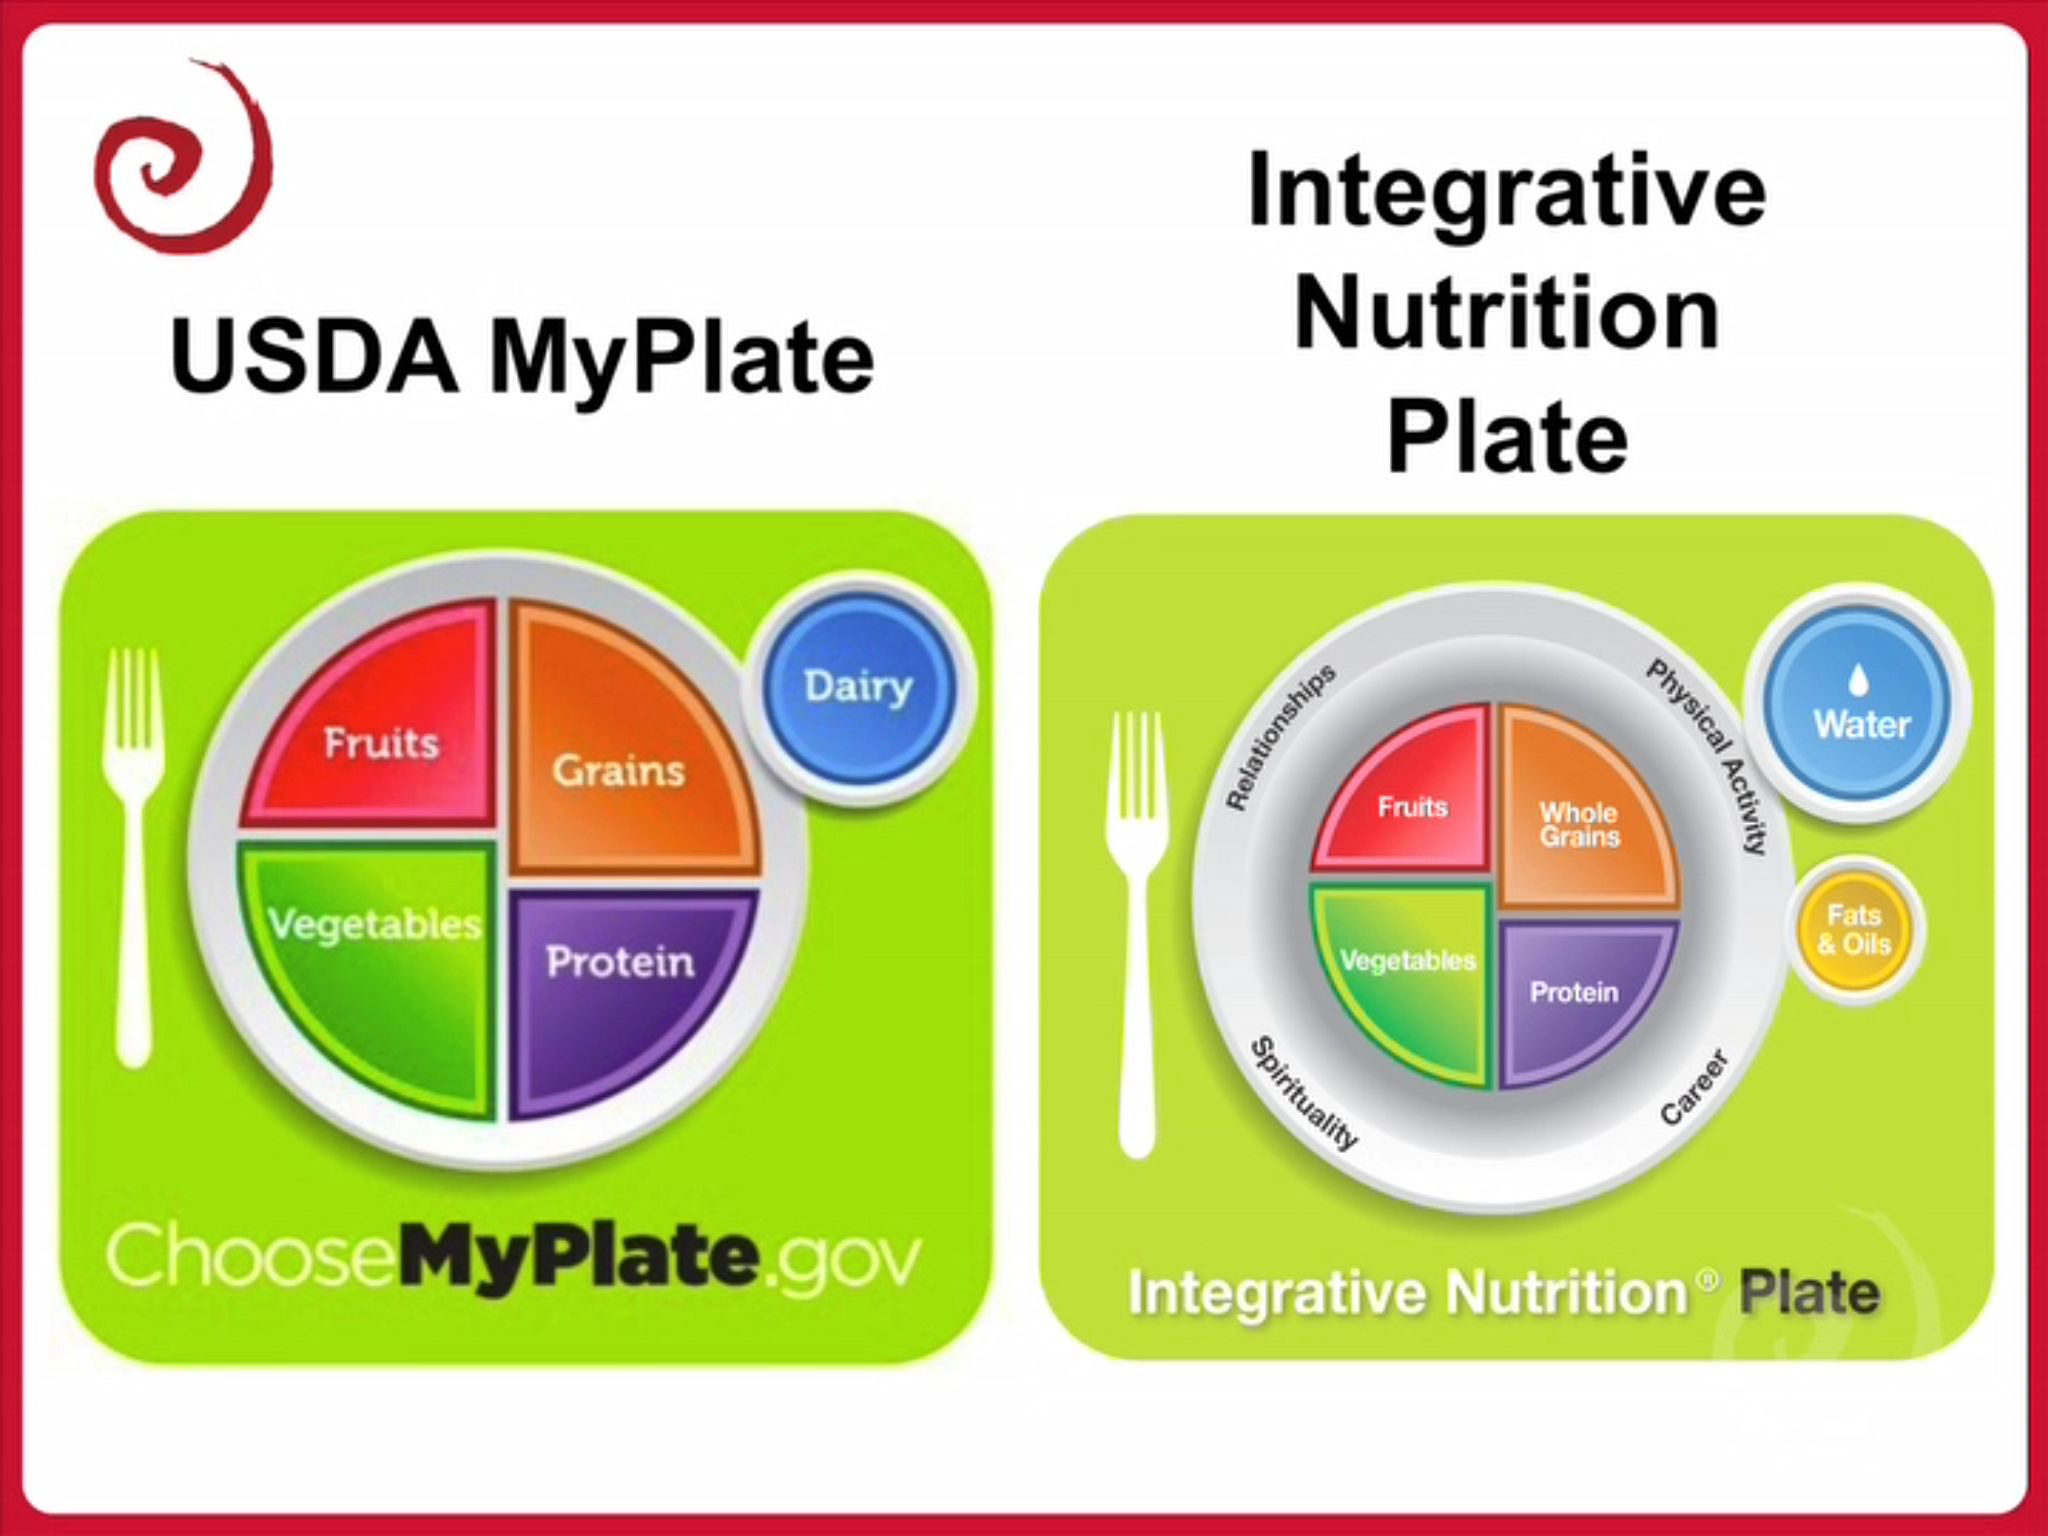 MyPlate vs. IIN Plate